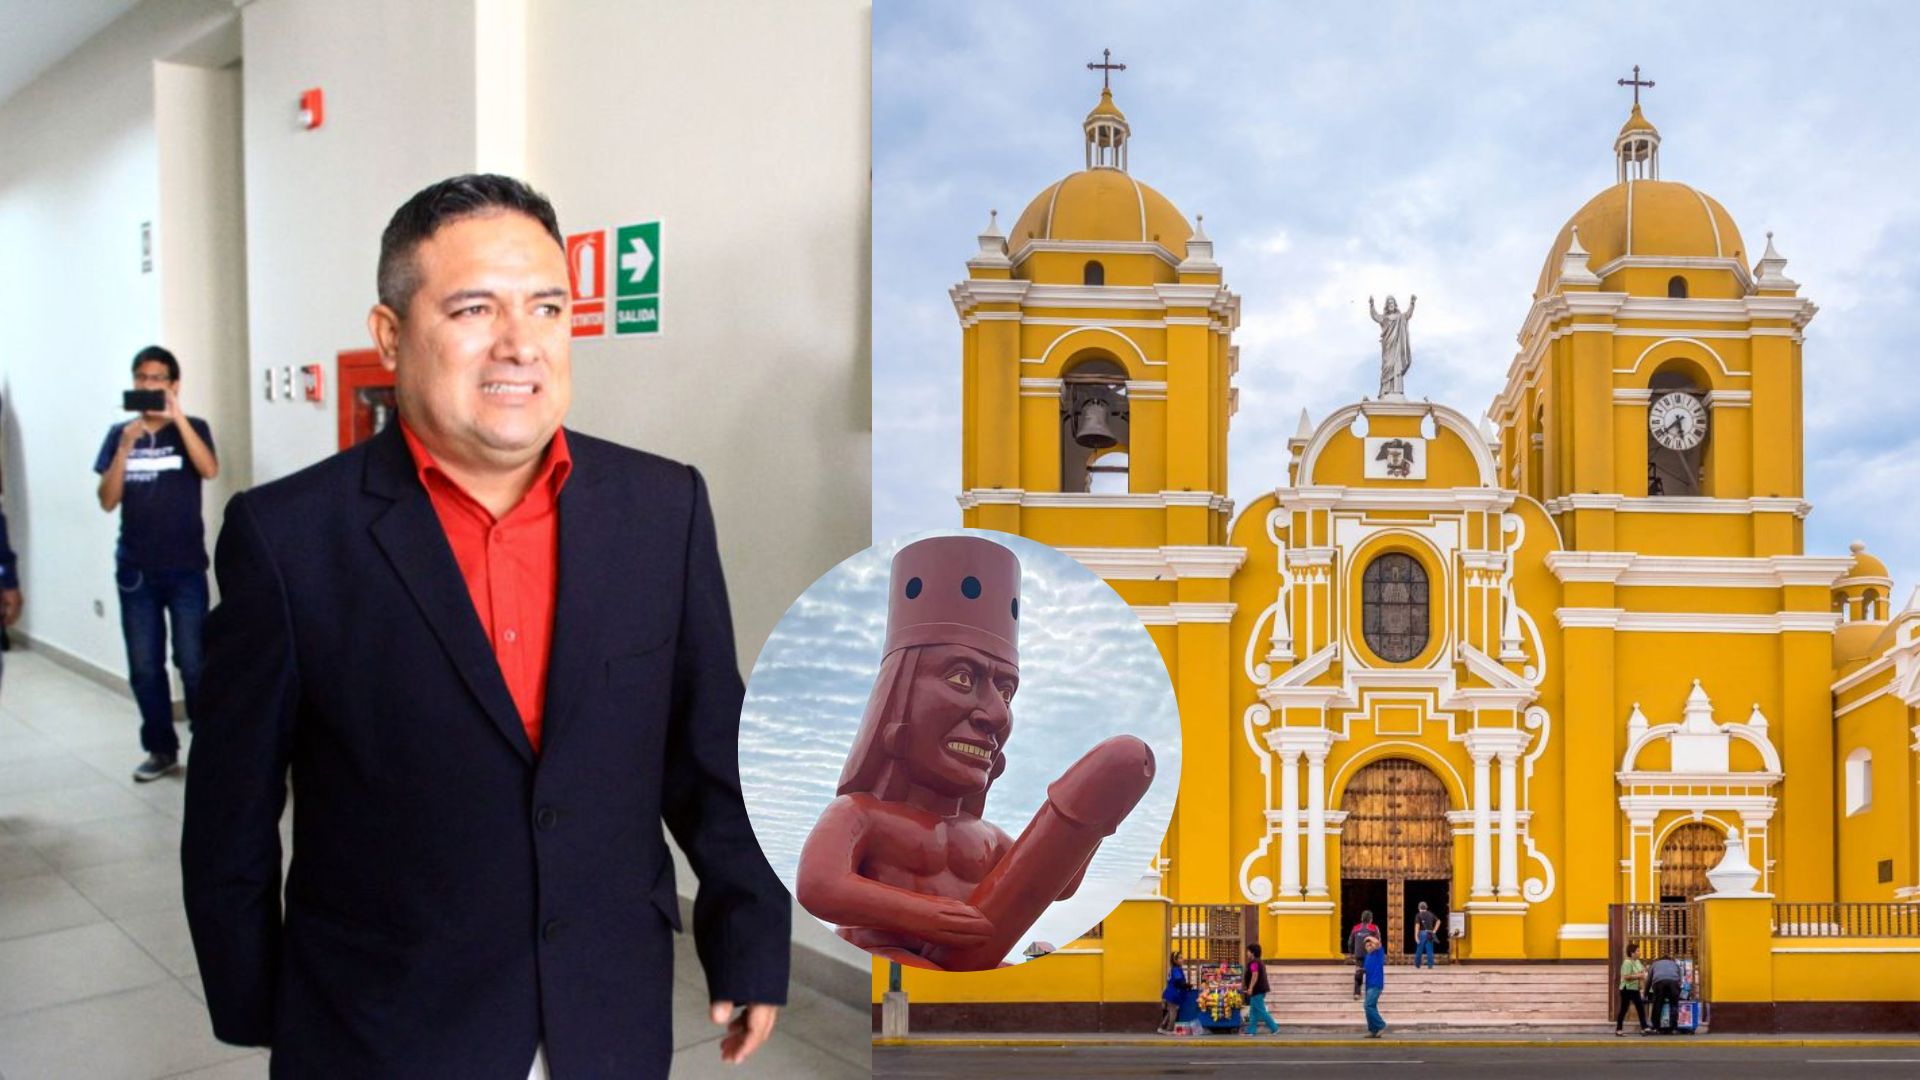 César Fernández, el polémico alcalde de los huacos eróticos de Moche, será el nuevo alcalde de Trujillo